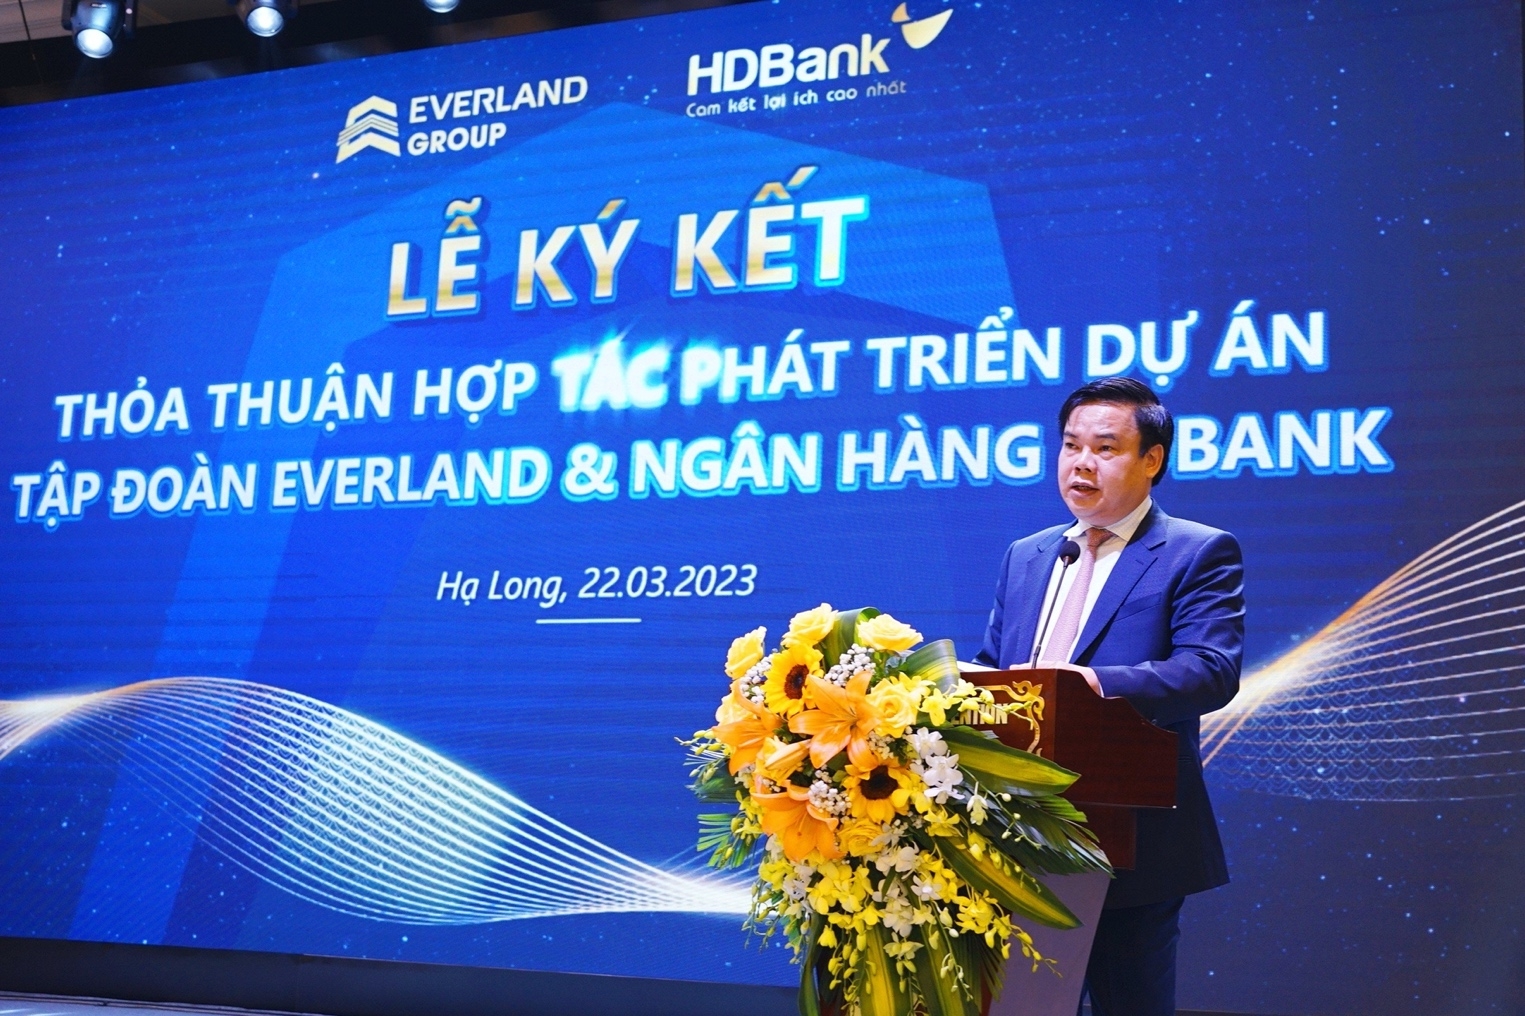 Tập đoàn Everland và Ngân hàng HDBank ký thỏa thuận hợp tác phát triển dự án